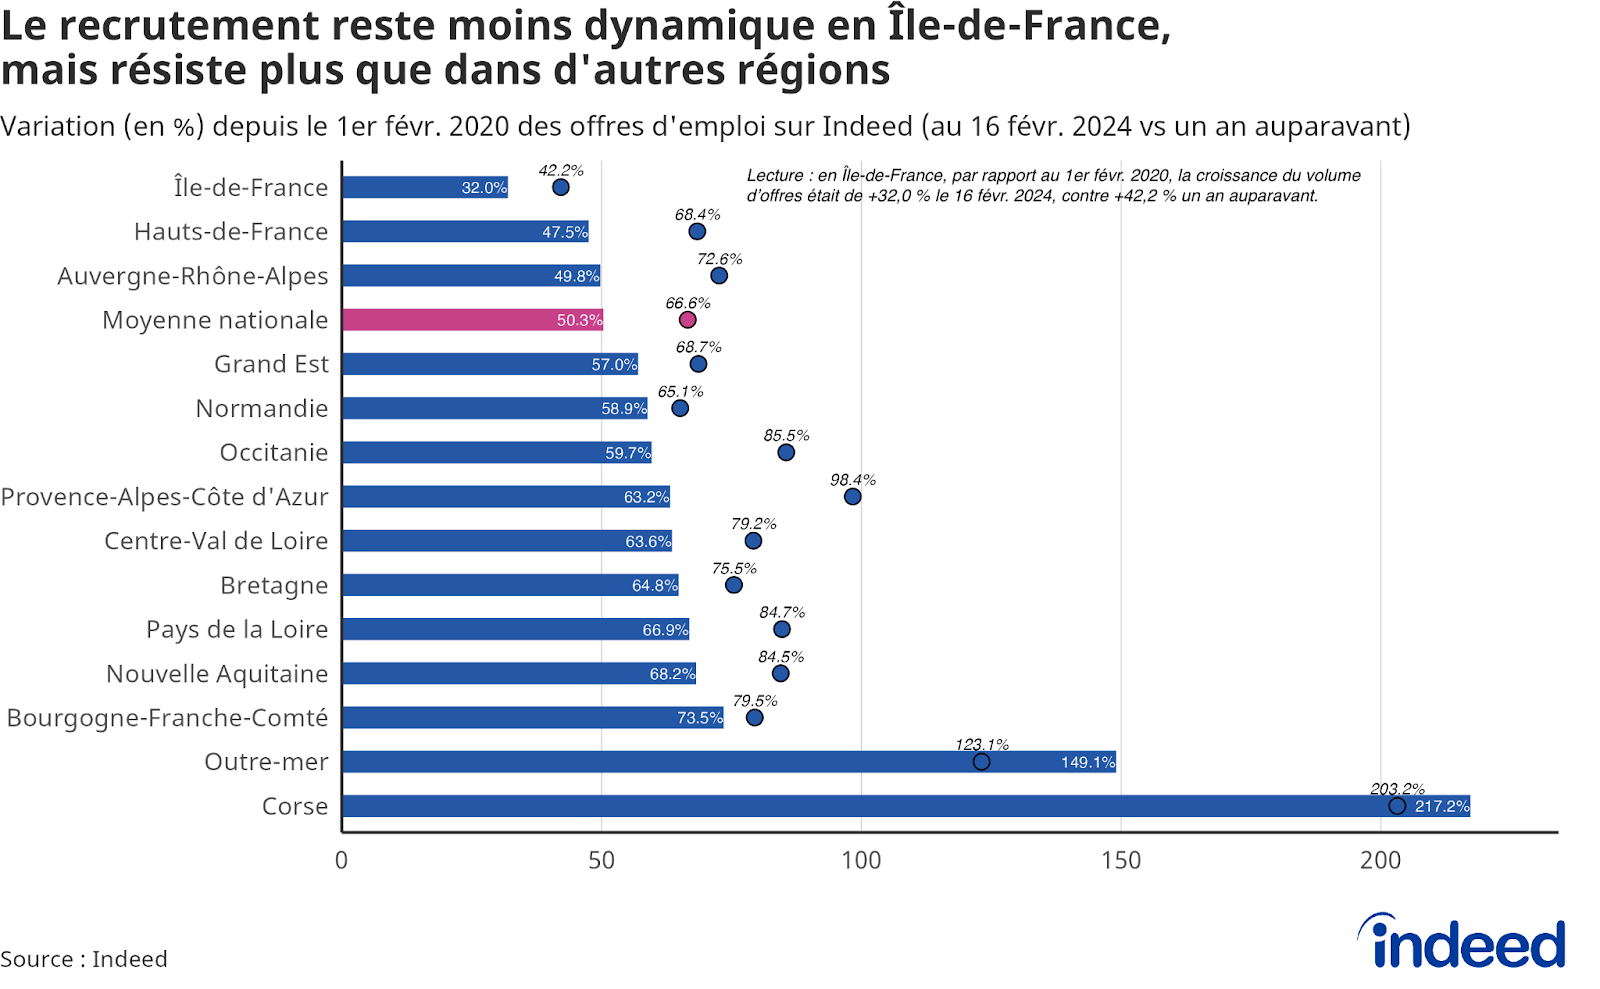 Diagramme en barres montrant la variation du volume d’offres depuis le 1er février 2020 par région française. Les données proviennent d’Indeed.